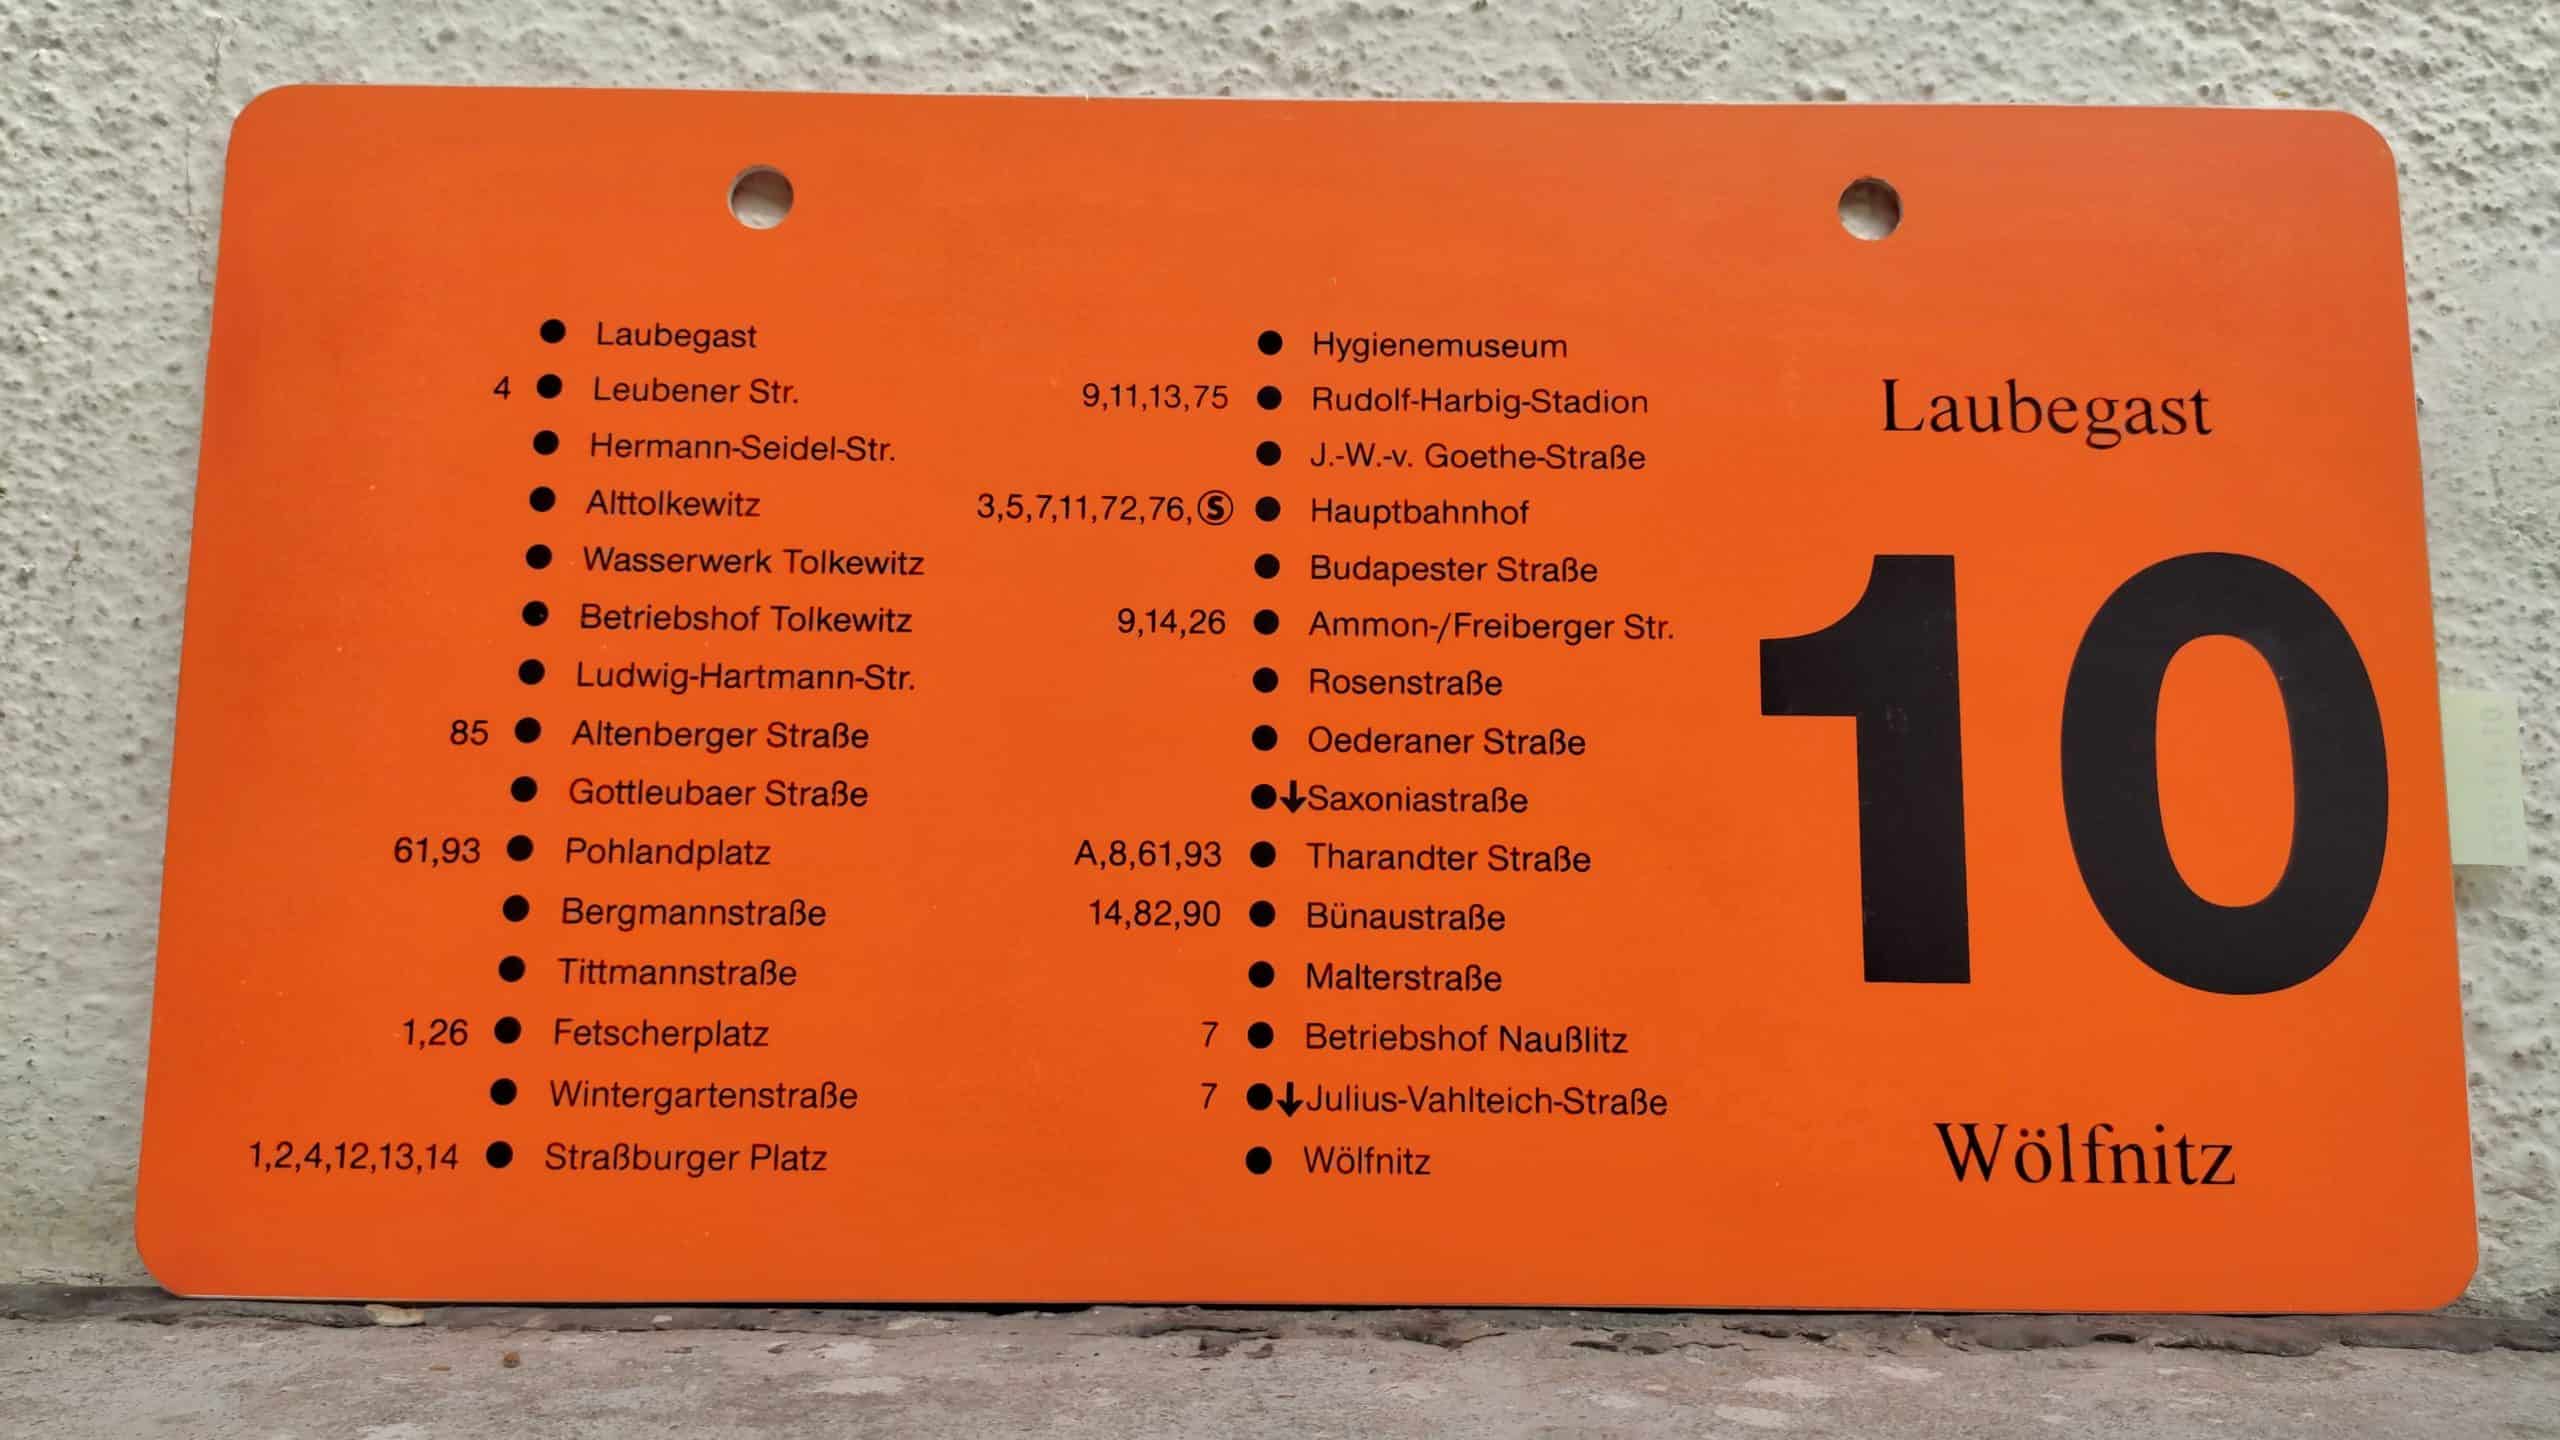 10 Laubegast – Wölfnitz #2